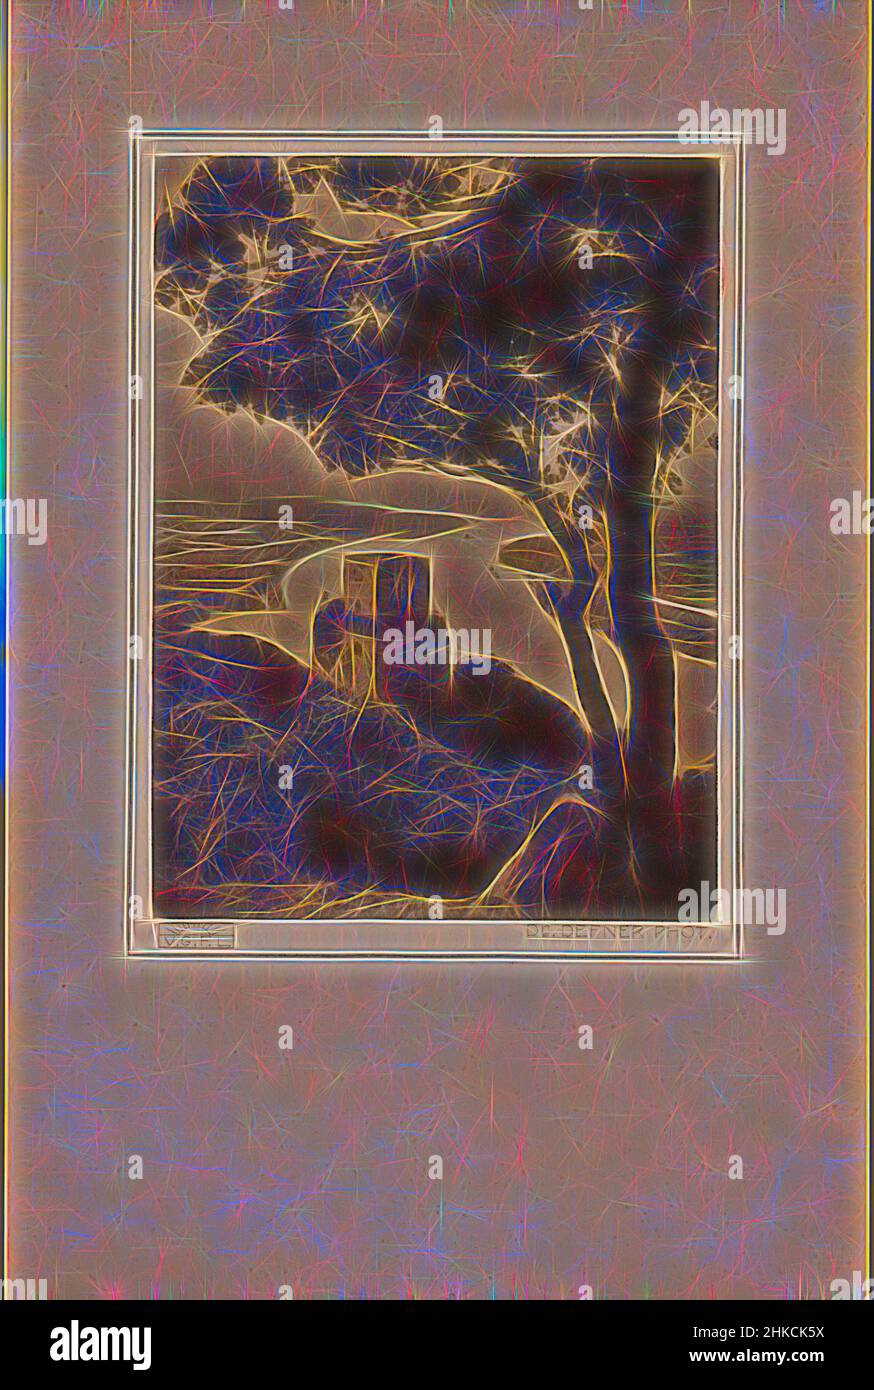 Ispirato da Castello con un fiume sullo sfondo, Germania [?], Adalbert Defner, editore: Verlagsgesellschaft für Lichtbildkunst (V.G.F.L.), Maagdenburg, c.. 1913 - c. 1940, carta, altezza 82 mm, larghezza 59 mm, altezza 140 mm, larghezza 92 mm, Reimagined by Artotop. L'arte classica reinventata con un tocco moderno. Design di calda e allegra luminosità e di raggi di luce. La fotografia si ispira al surrealismo e al futurismo, abbracciando l'energia dinamica della tecnologia moderna, del movimento, della velocità e rivoluzionando la cultura Foto Stock